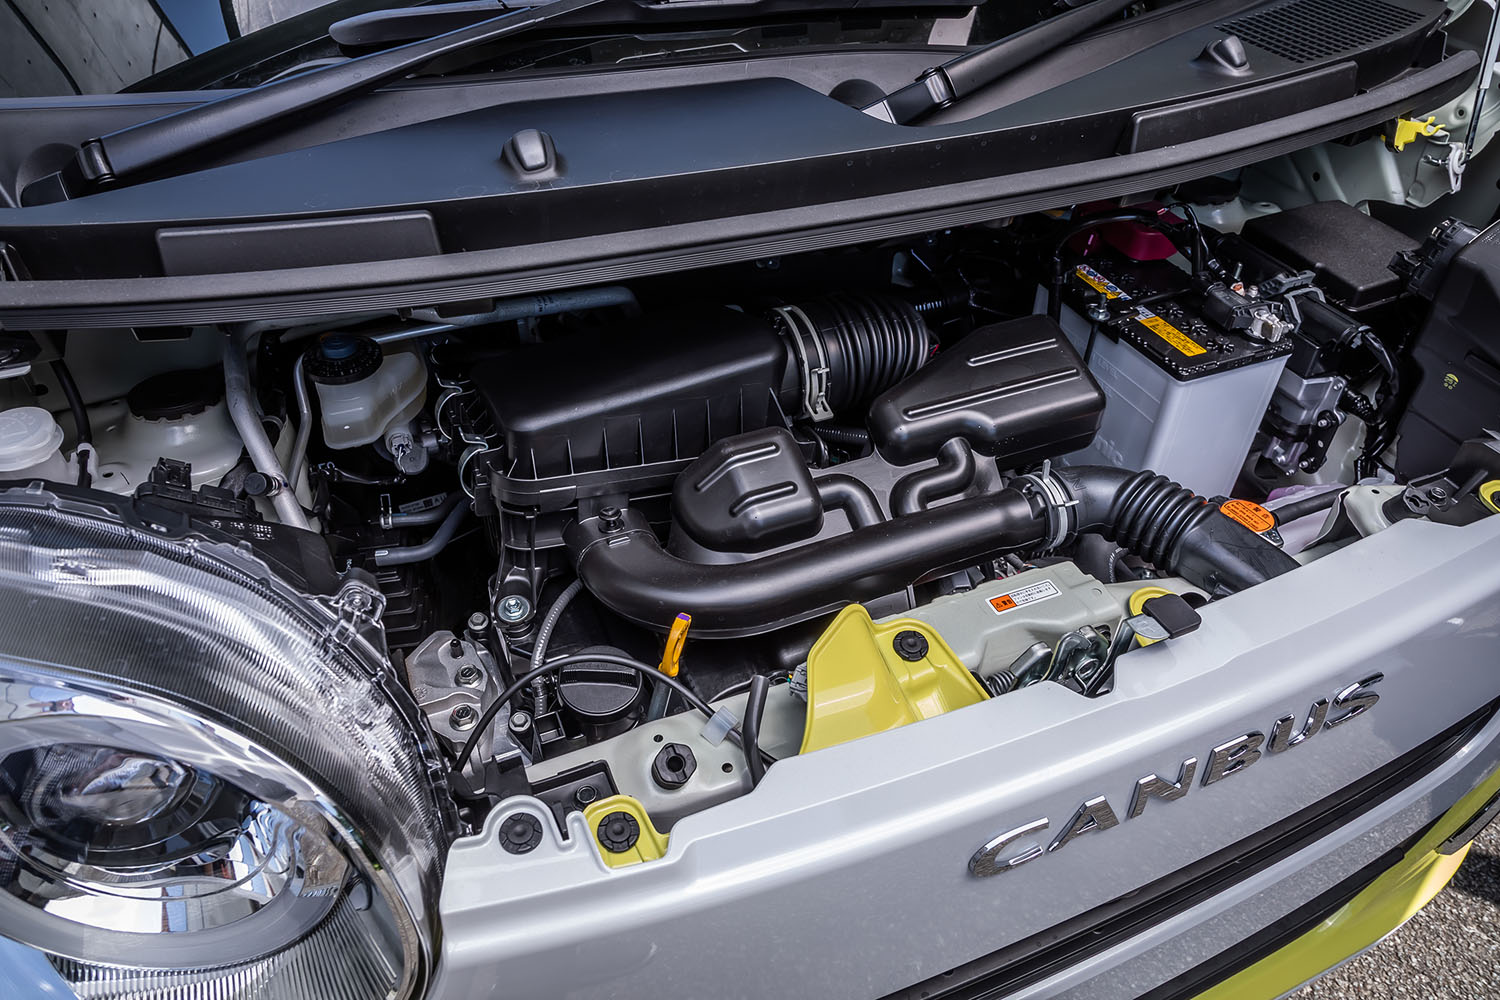 0.66リッターの直3自然吸気エンジンは、最高出力52PS、最大トルク60N・mを発生。WLTCモードの燃費値は22.9km/リッターと発表されている。トランスミッションは全車CVTを採用している。